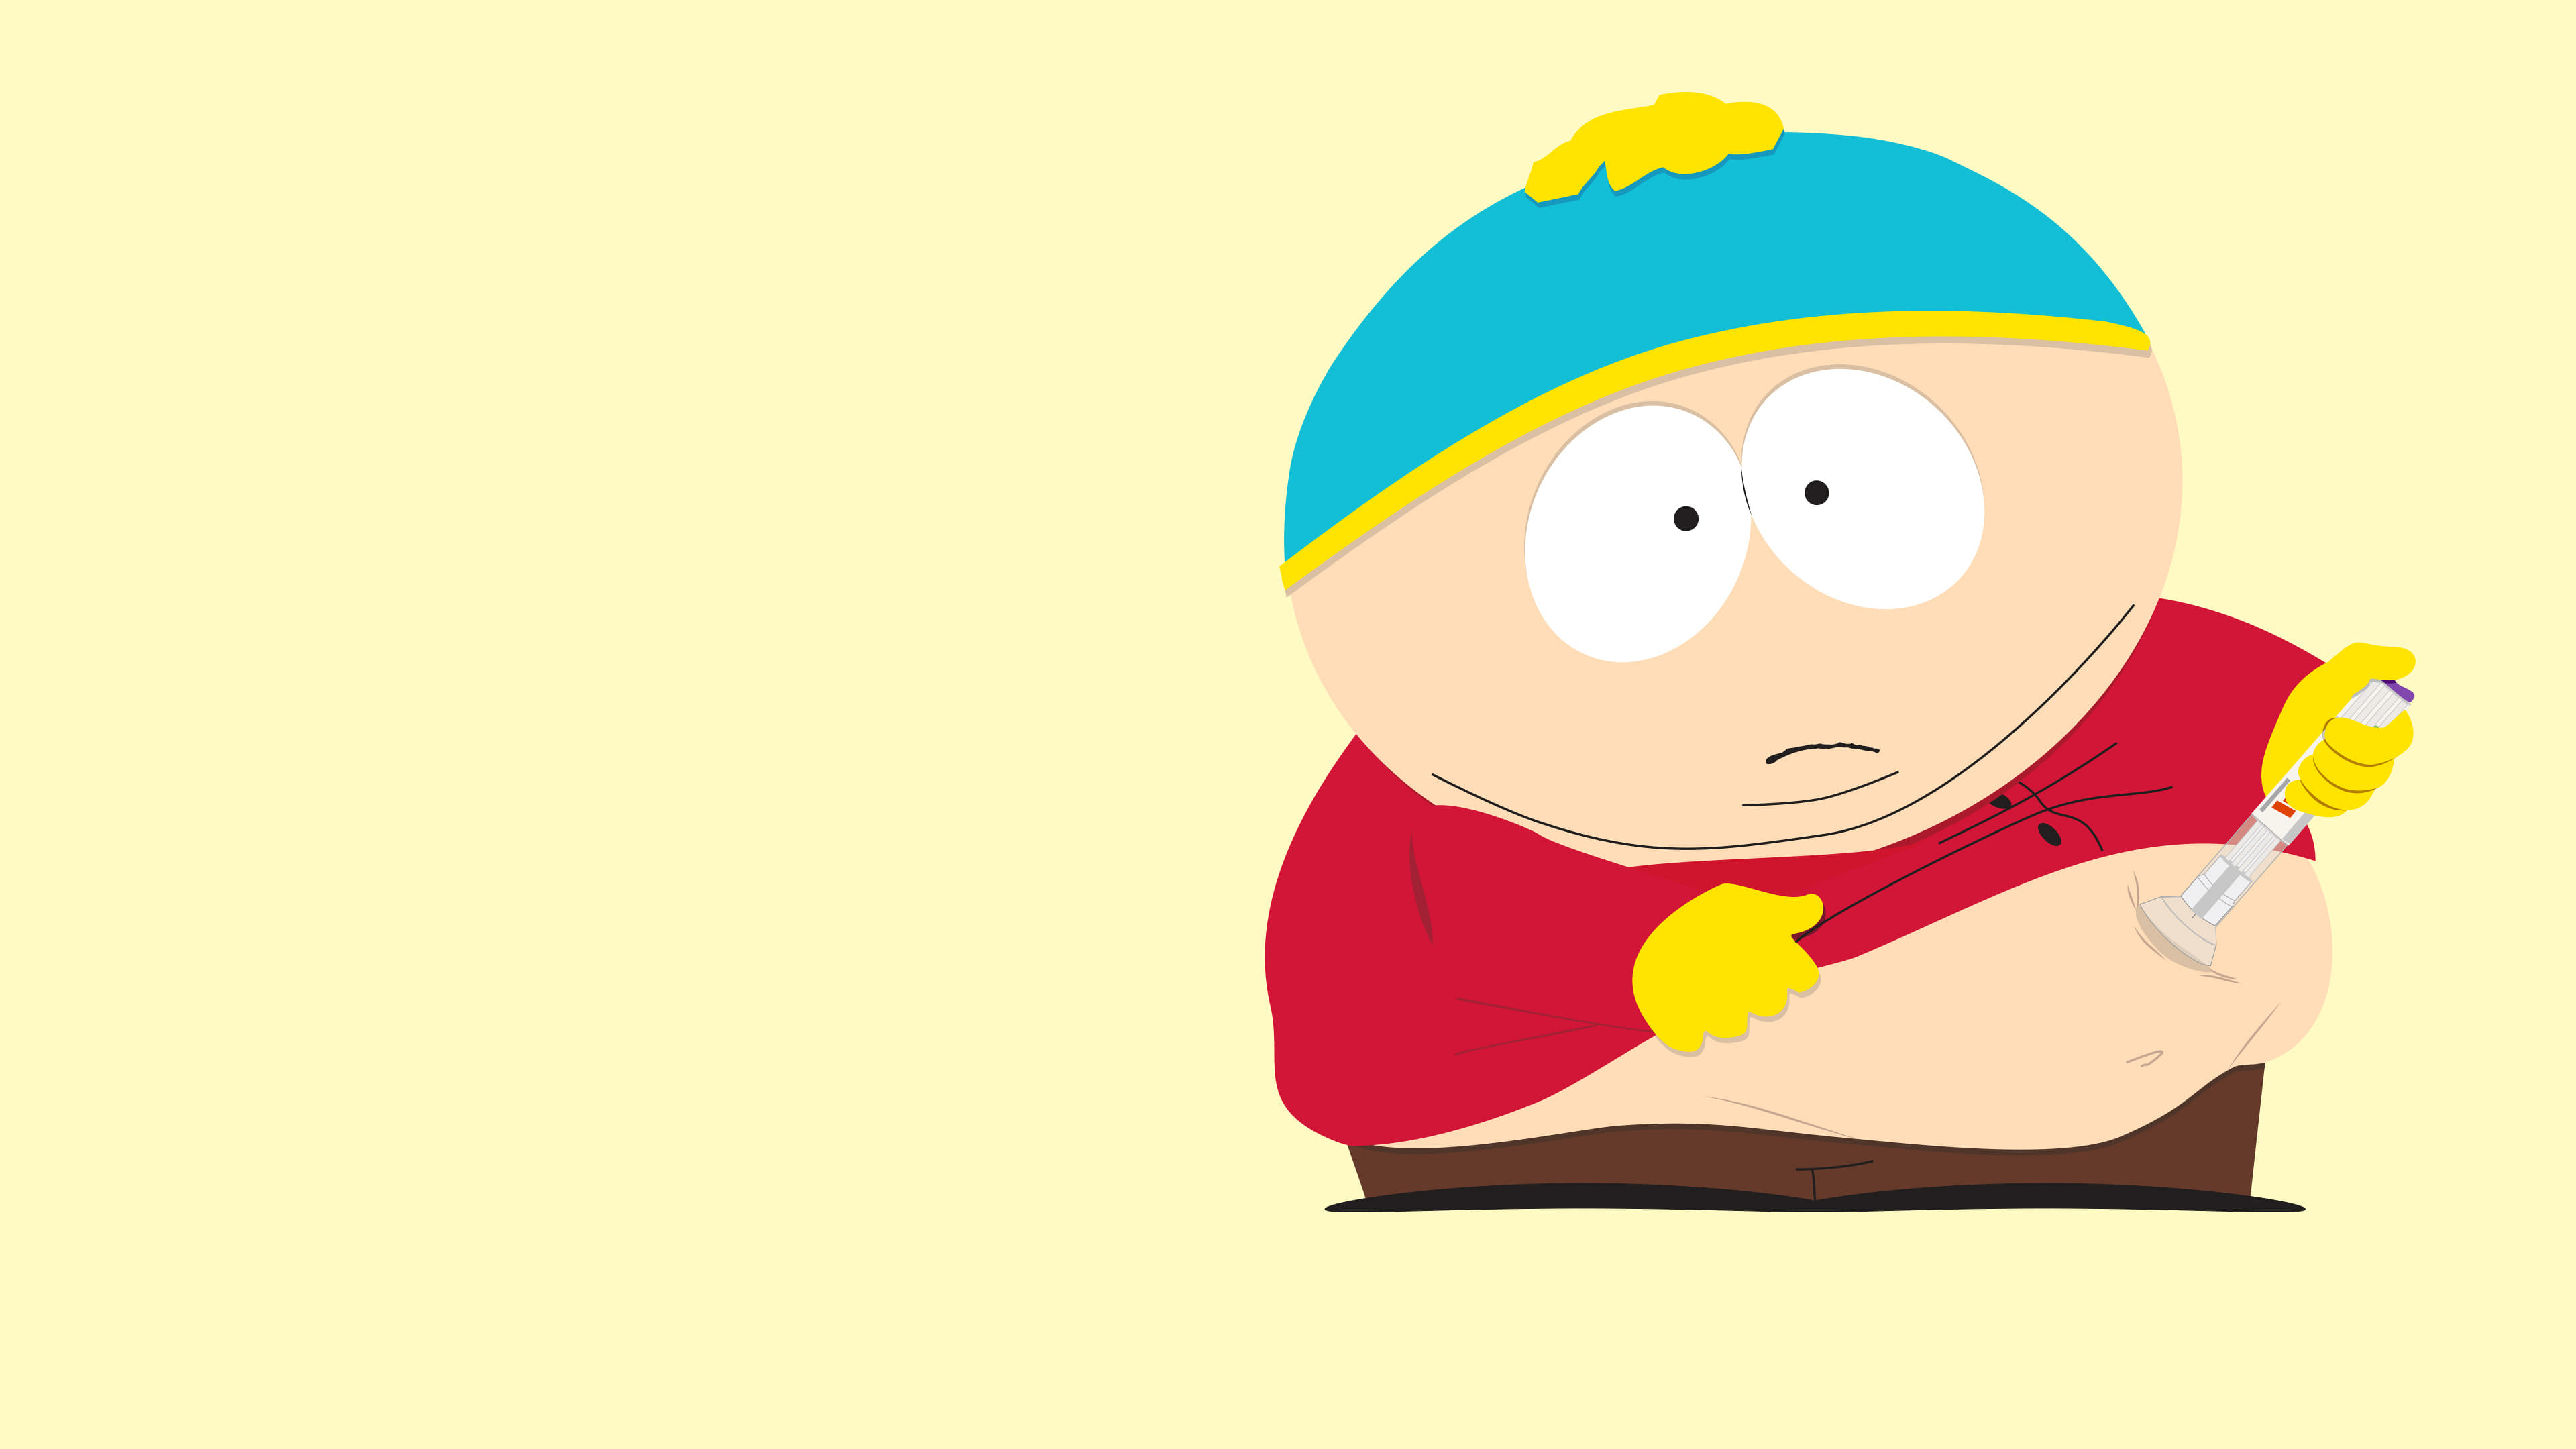 South Park: La fine dell'obesità